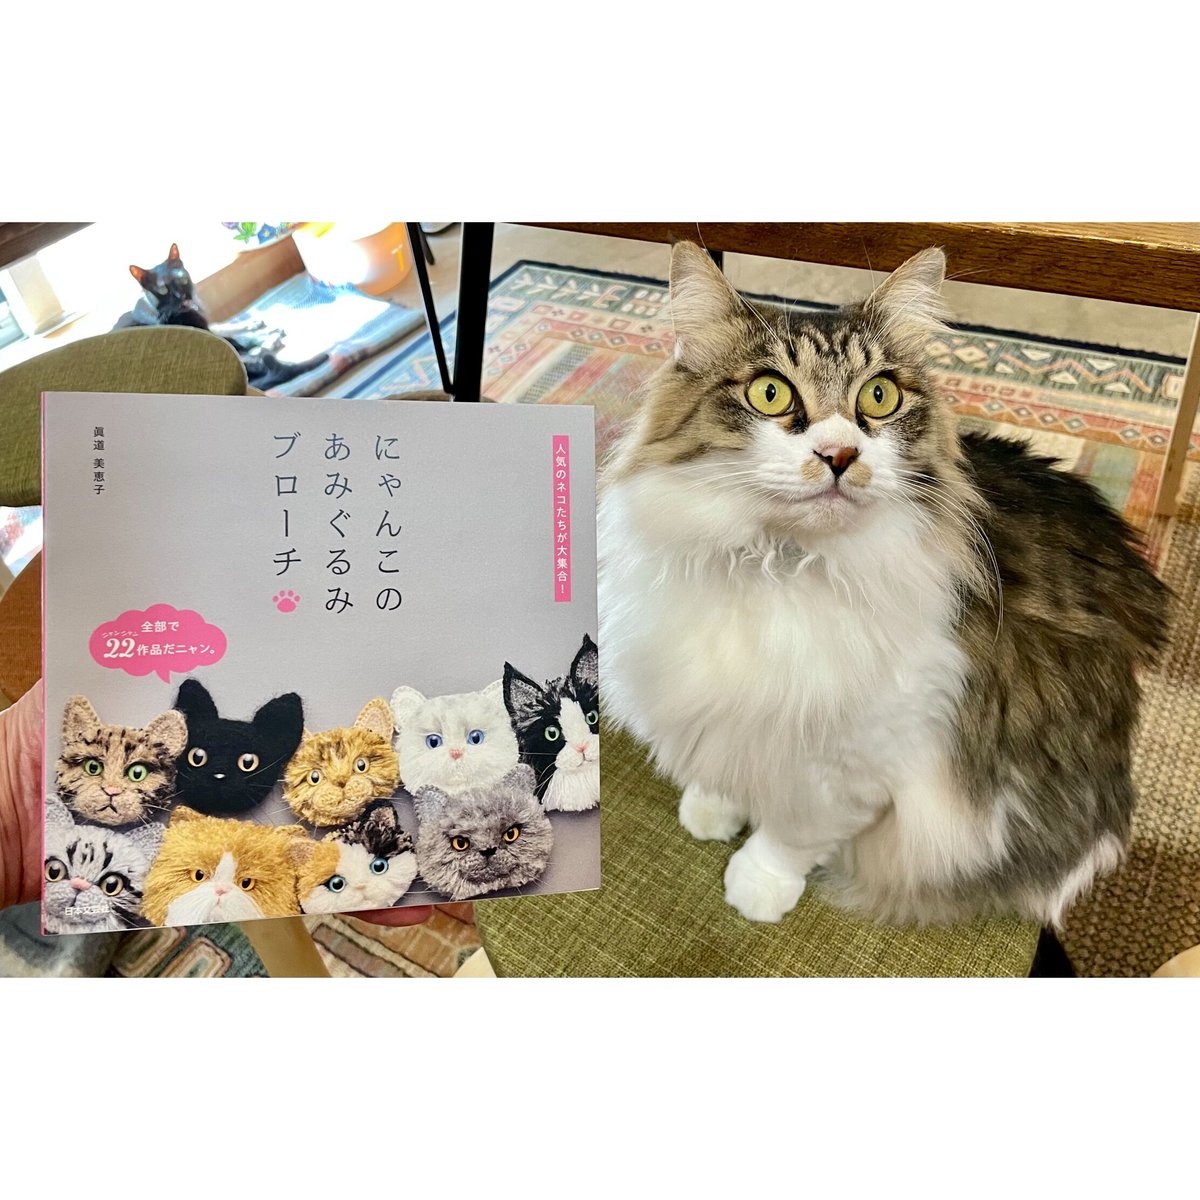 にゃんこのあみぐるみブローチ | Cat's Meow Books Virtual Shop β